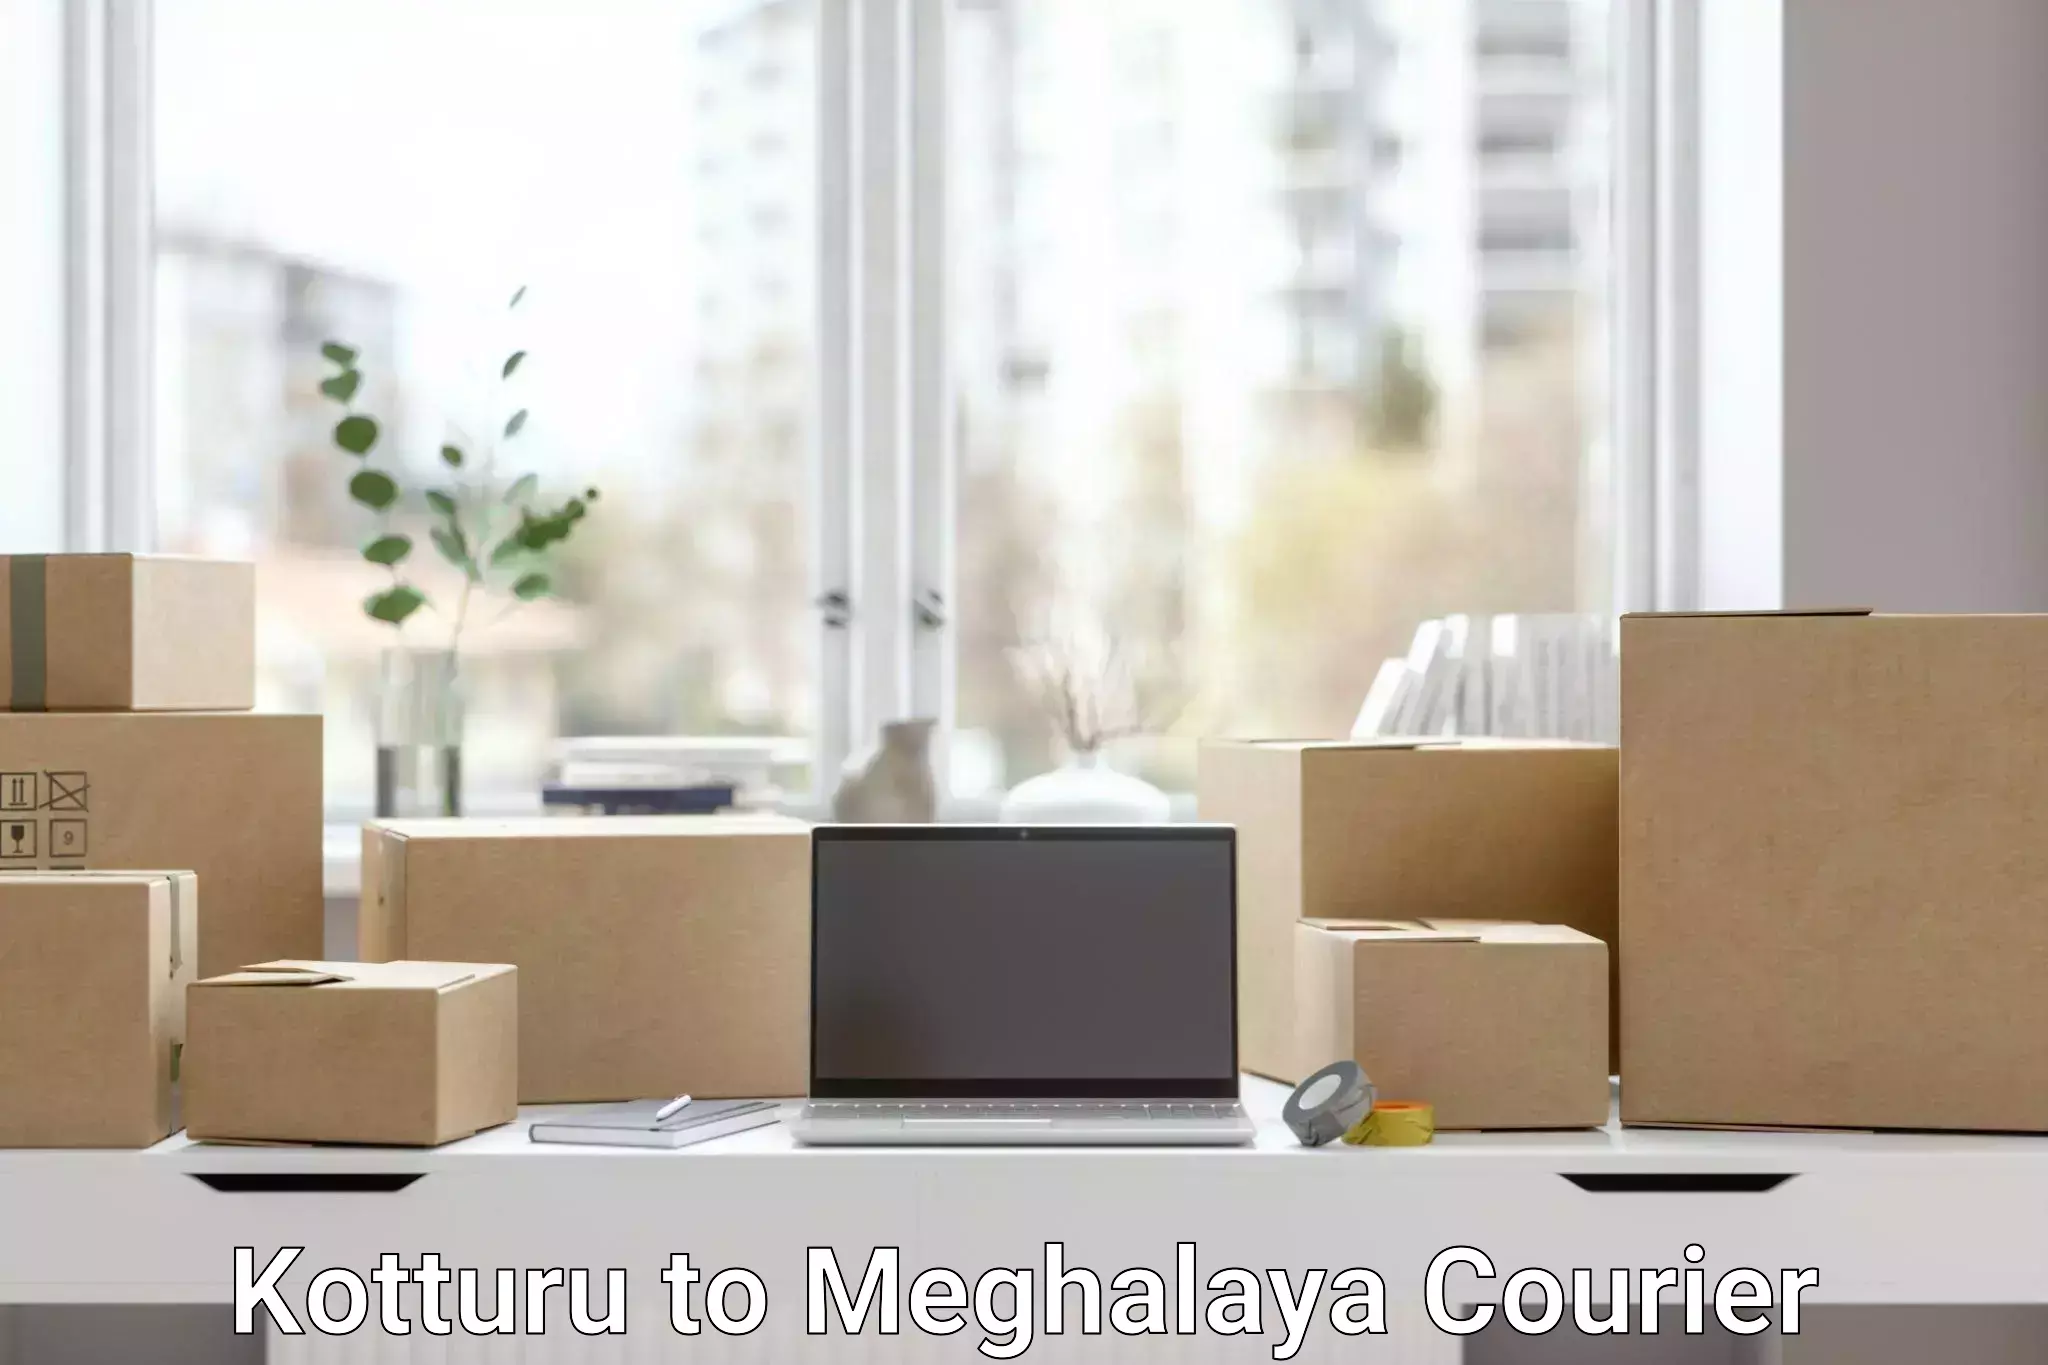 Customer-focused courier Kotturu to NIT Meghalaya